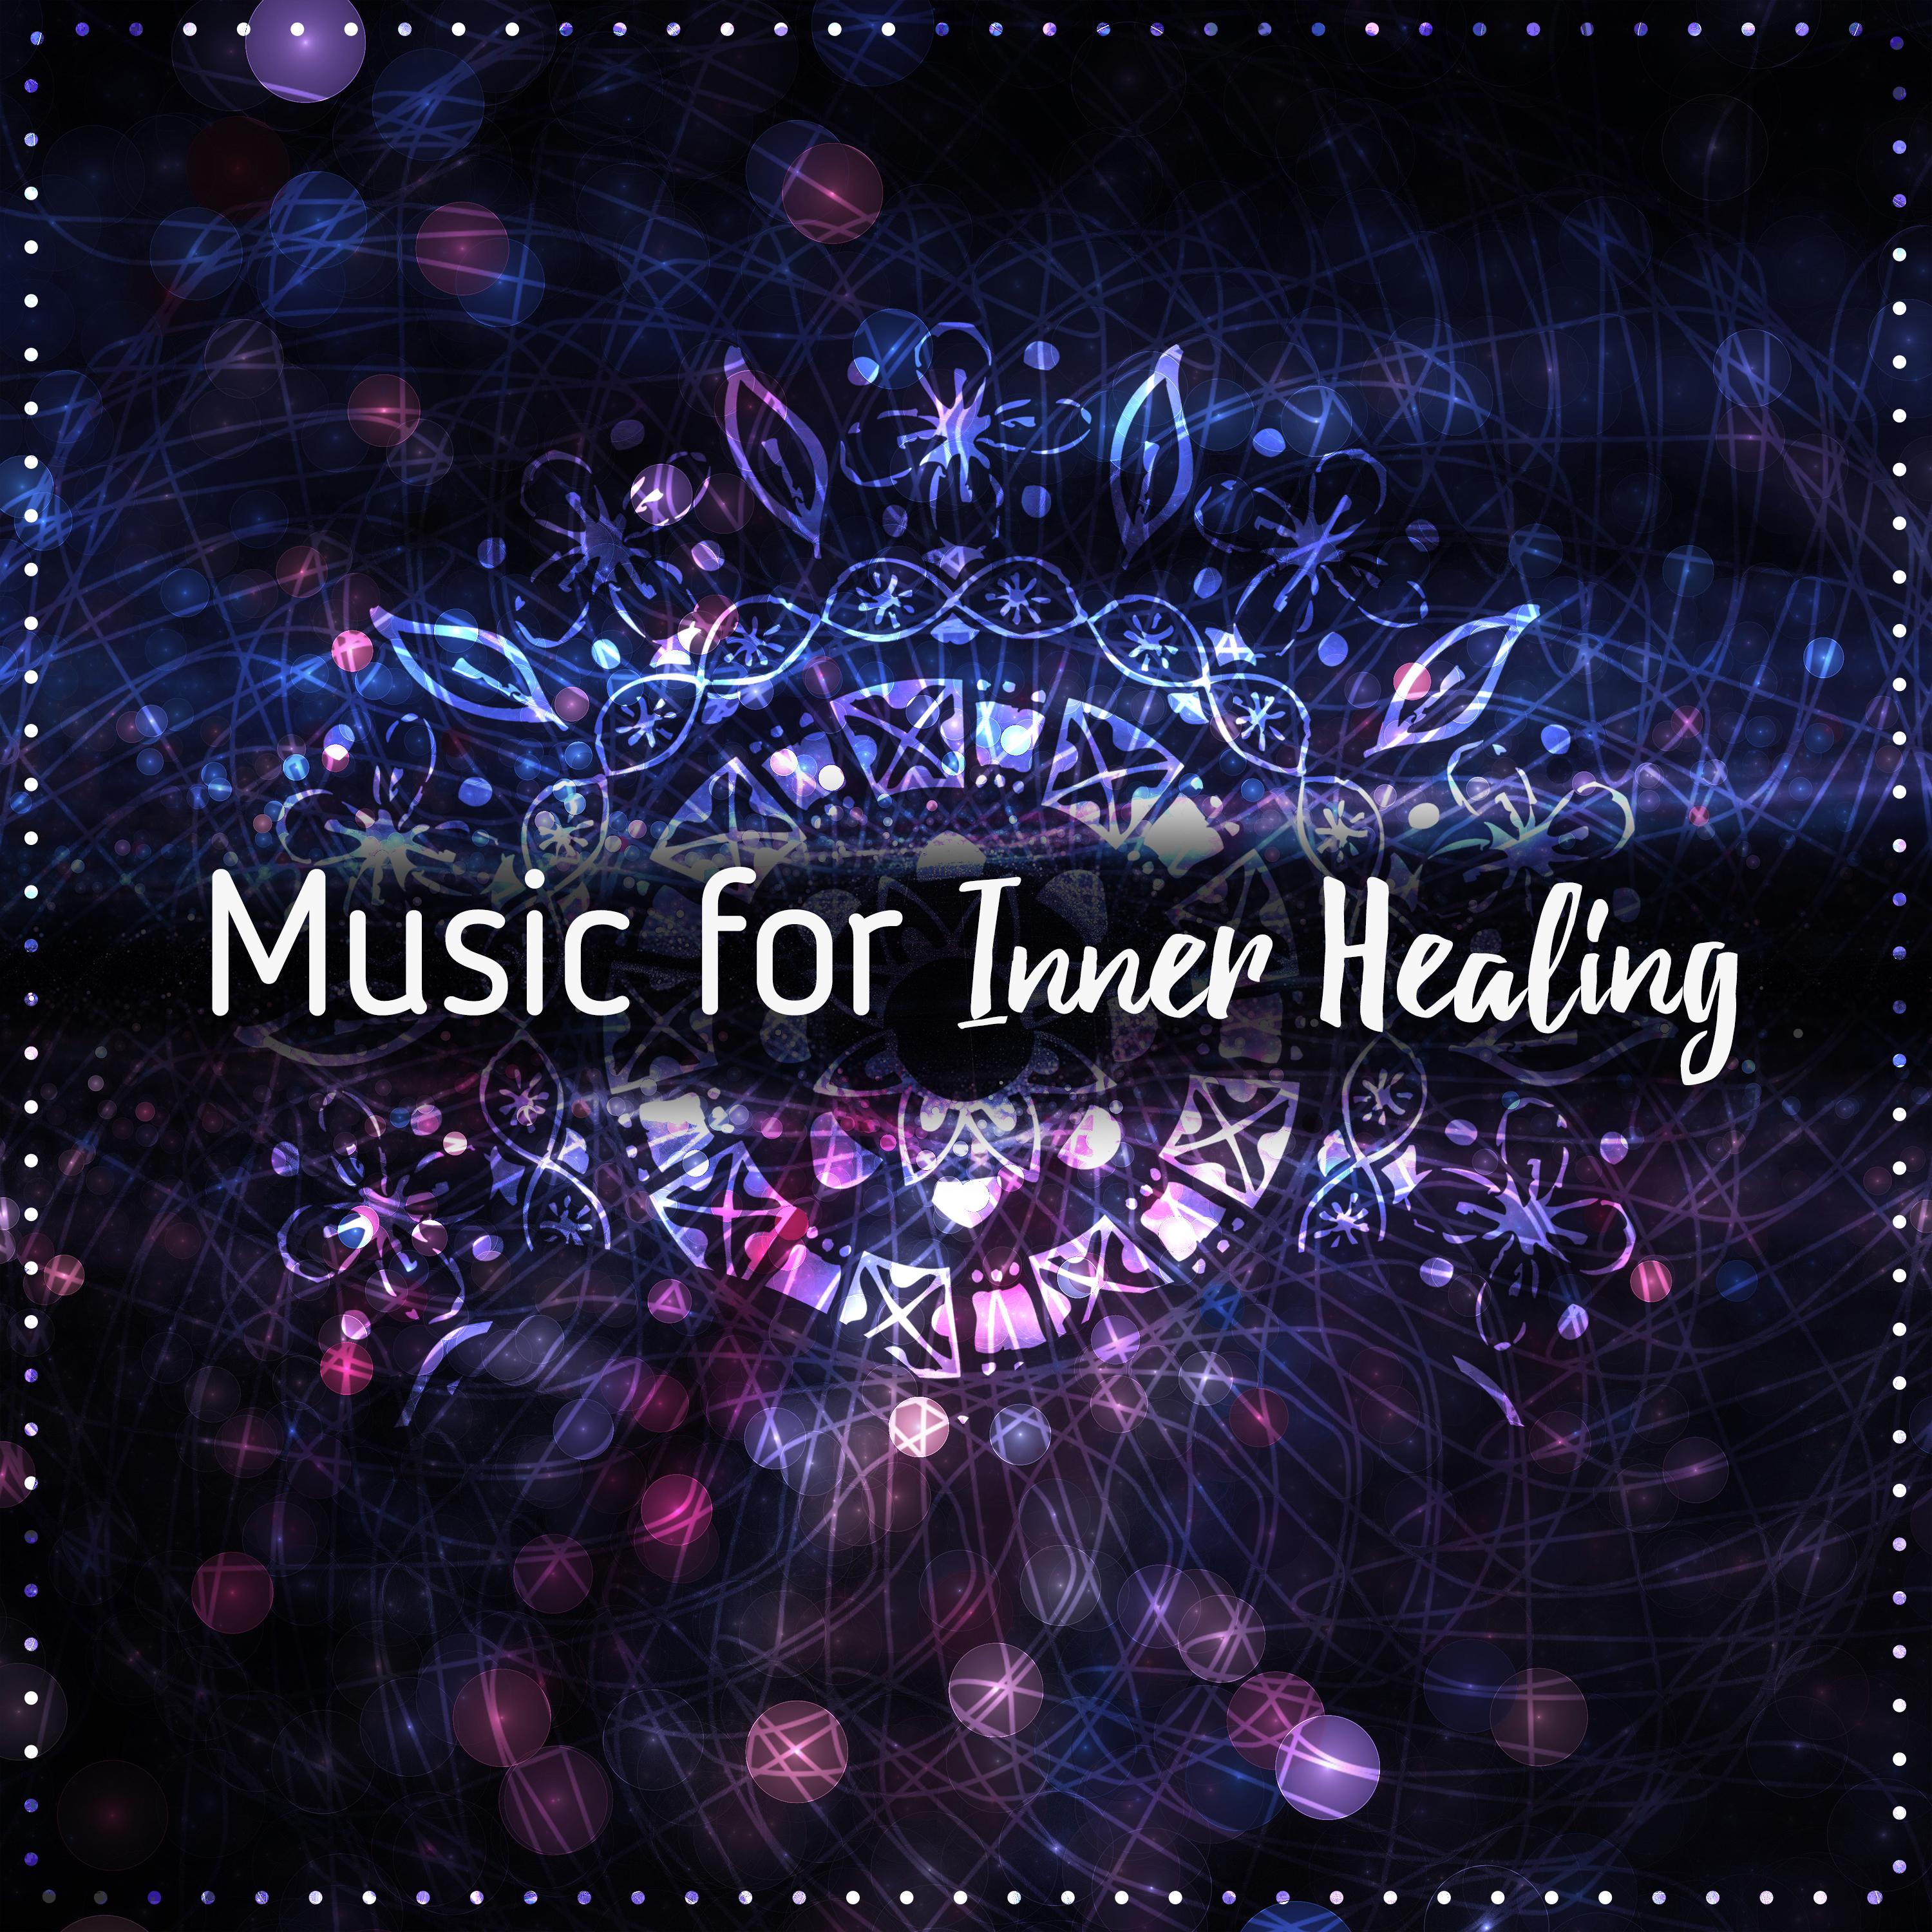 Music for Inner Healing